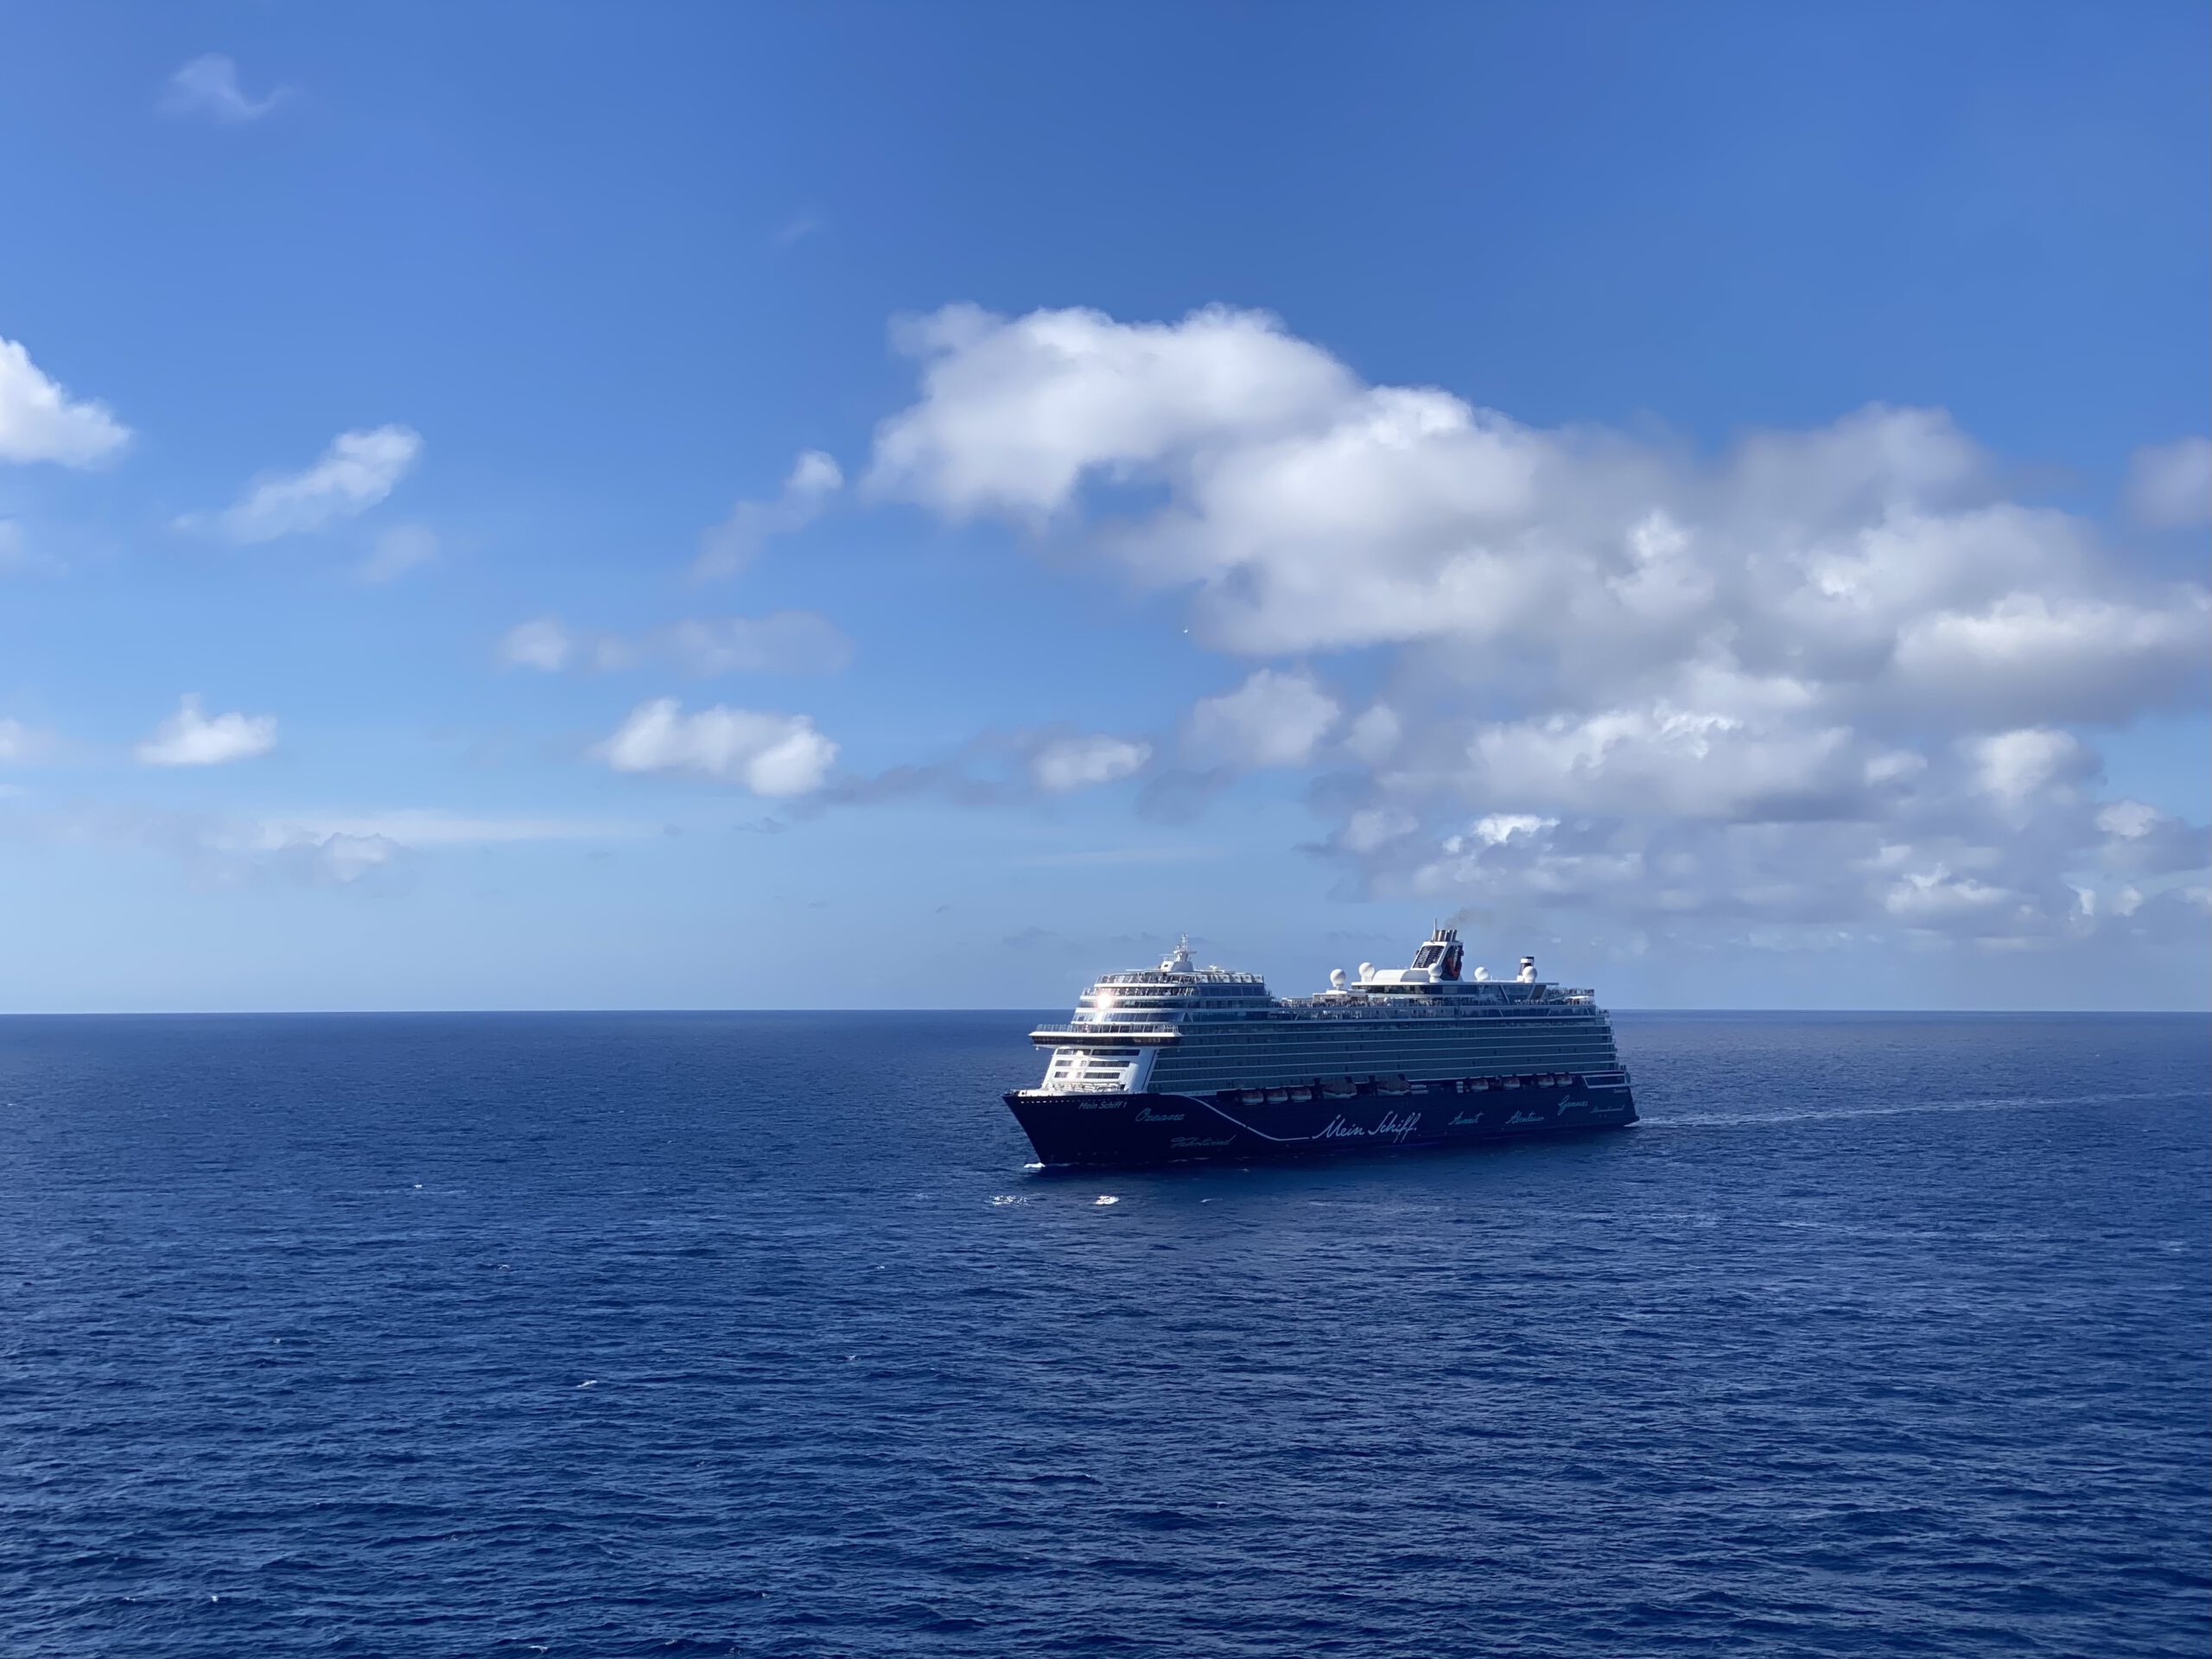 TUI Cruises Mein Schiff Kreuzfahrt immer zum besten preis buchen